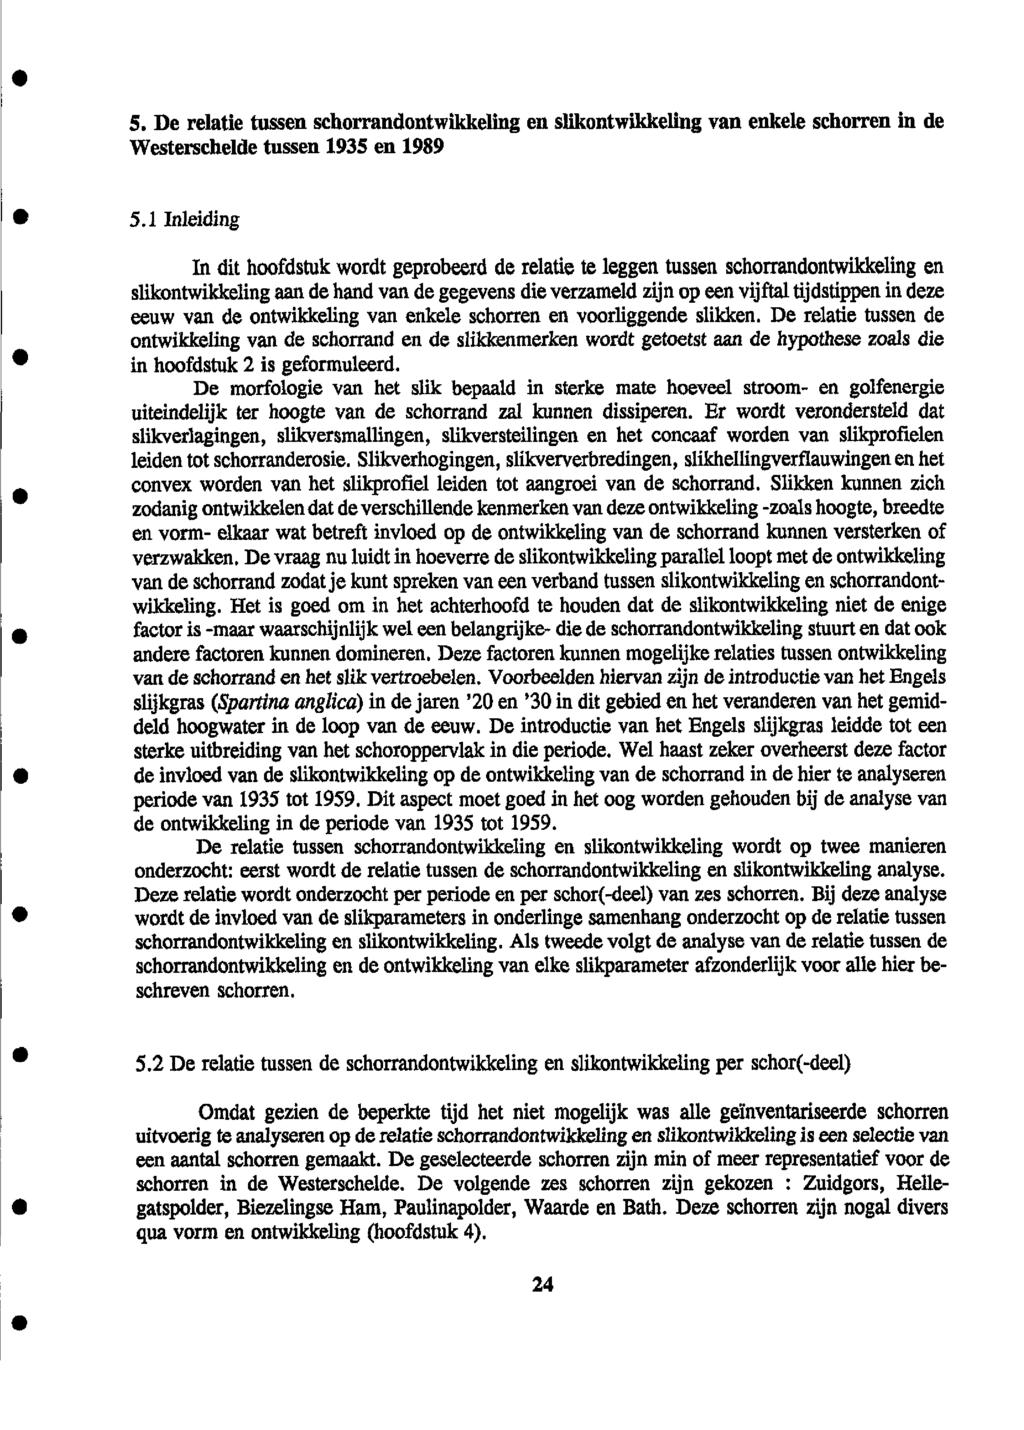 5. De relatie tussen schorrandontwikkeling en slikontwikkeliiig van enkele schorren in de Westerschelde tussen 1935 en 1989 5.